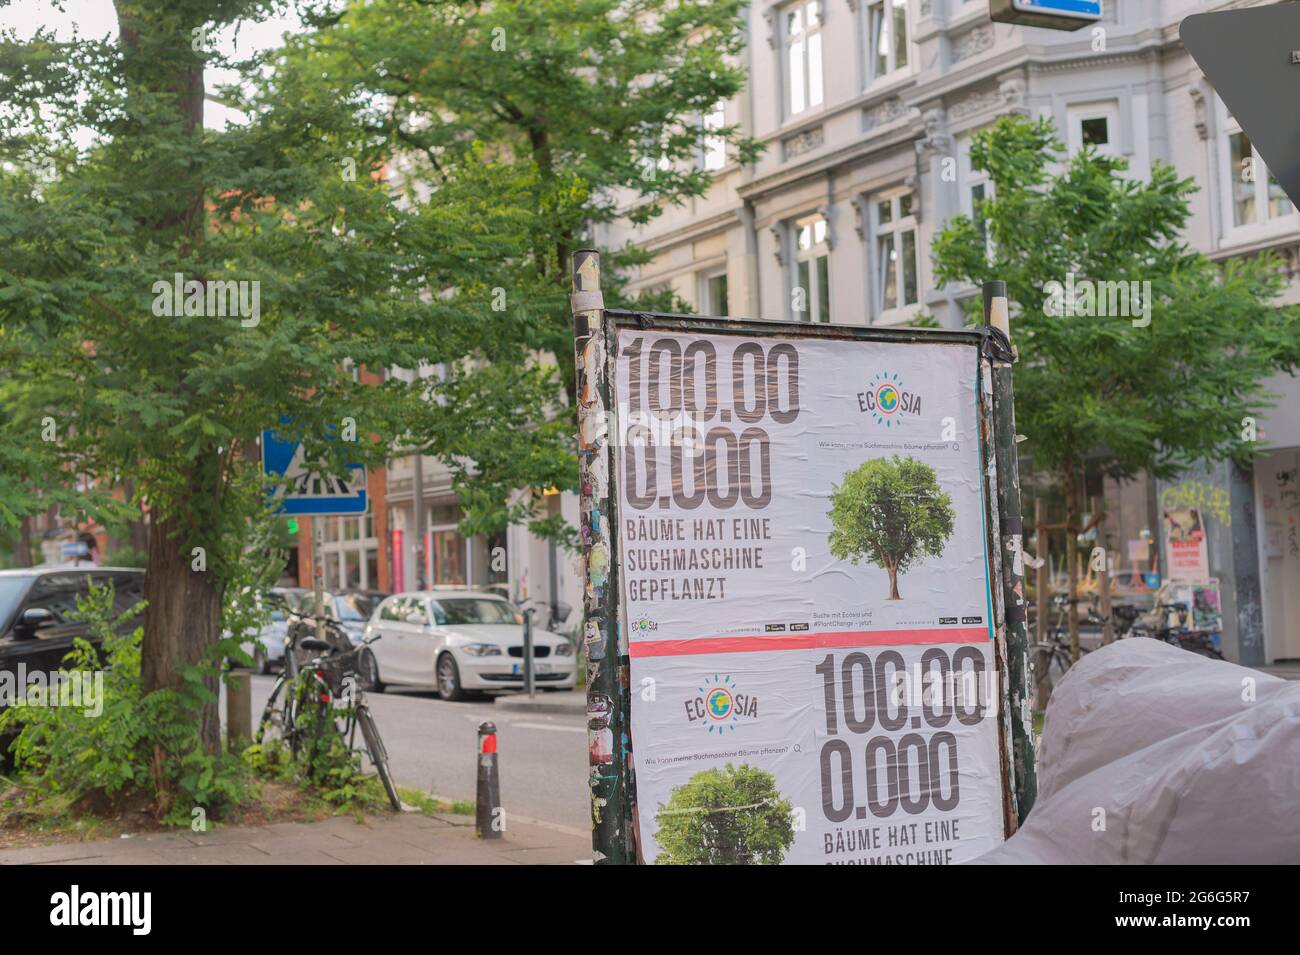 Cartel publicitario de un motor de búsqueda ecológico en la ciudad, Alemania, Hamburgo Foto de stock